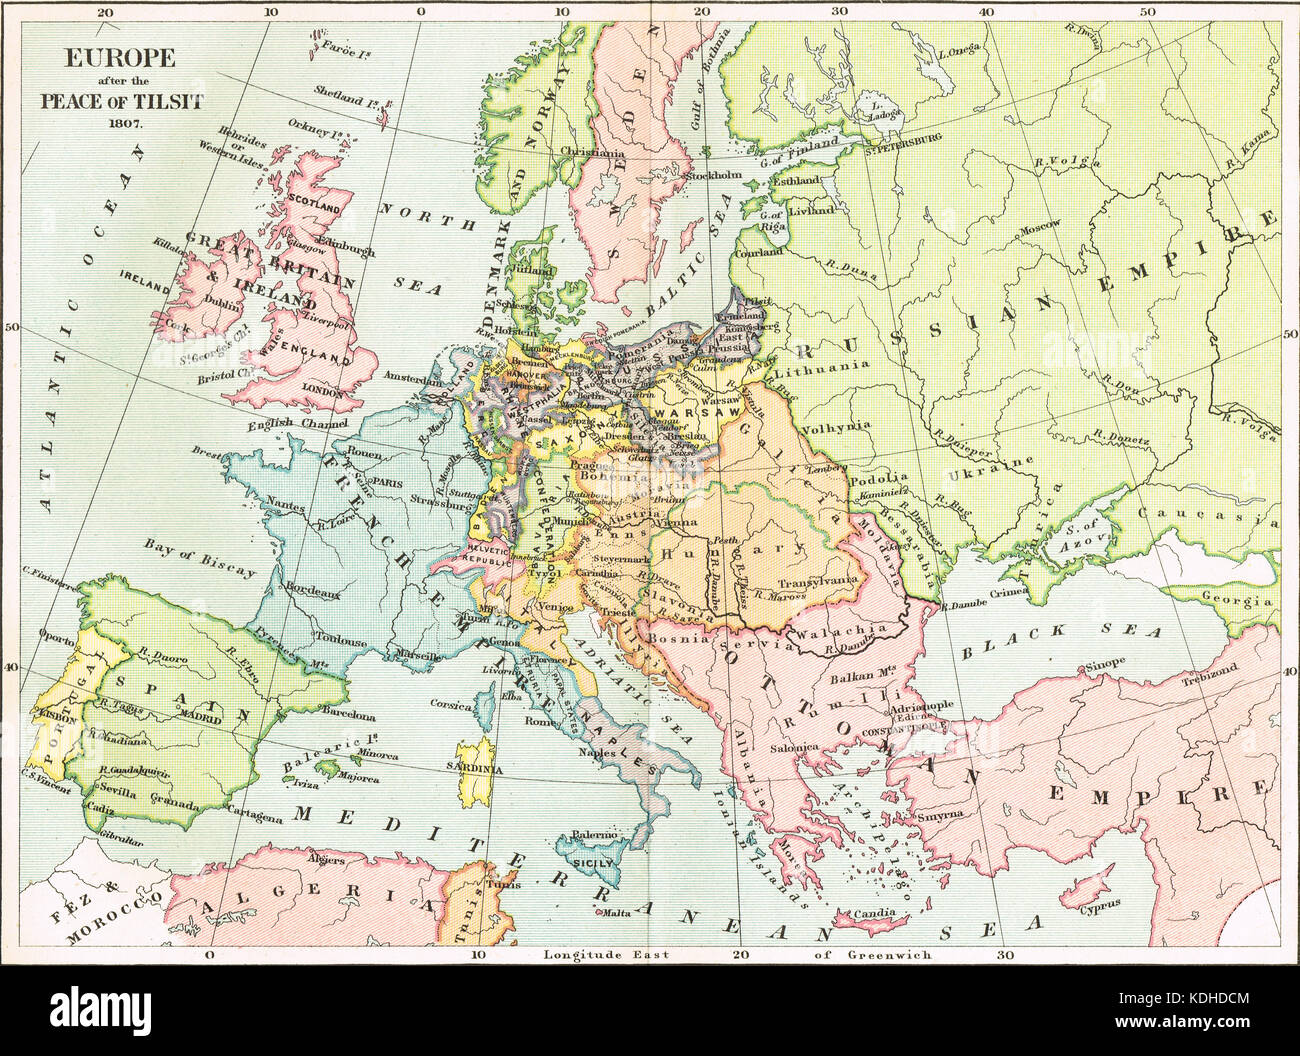 Carte de l'Europe après la paix de tilsit, 1807 Banque D'Images